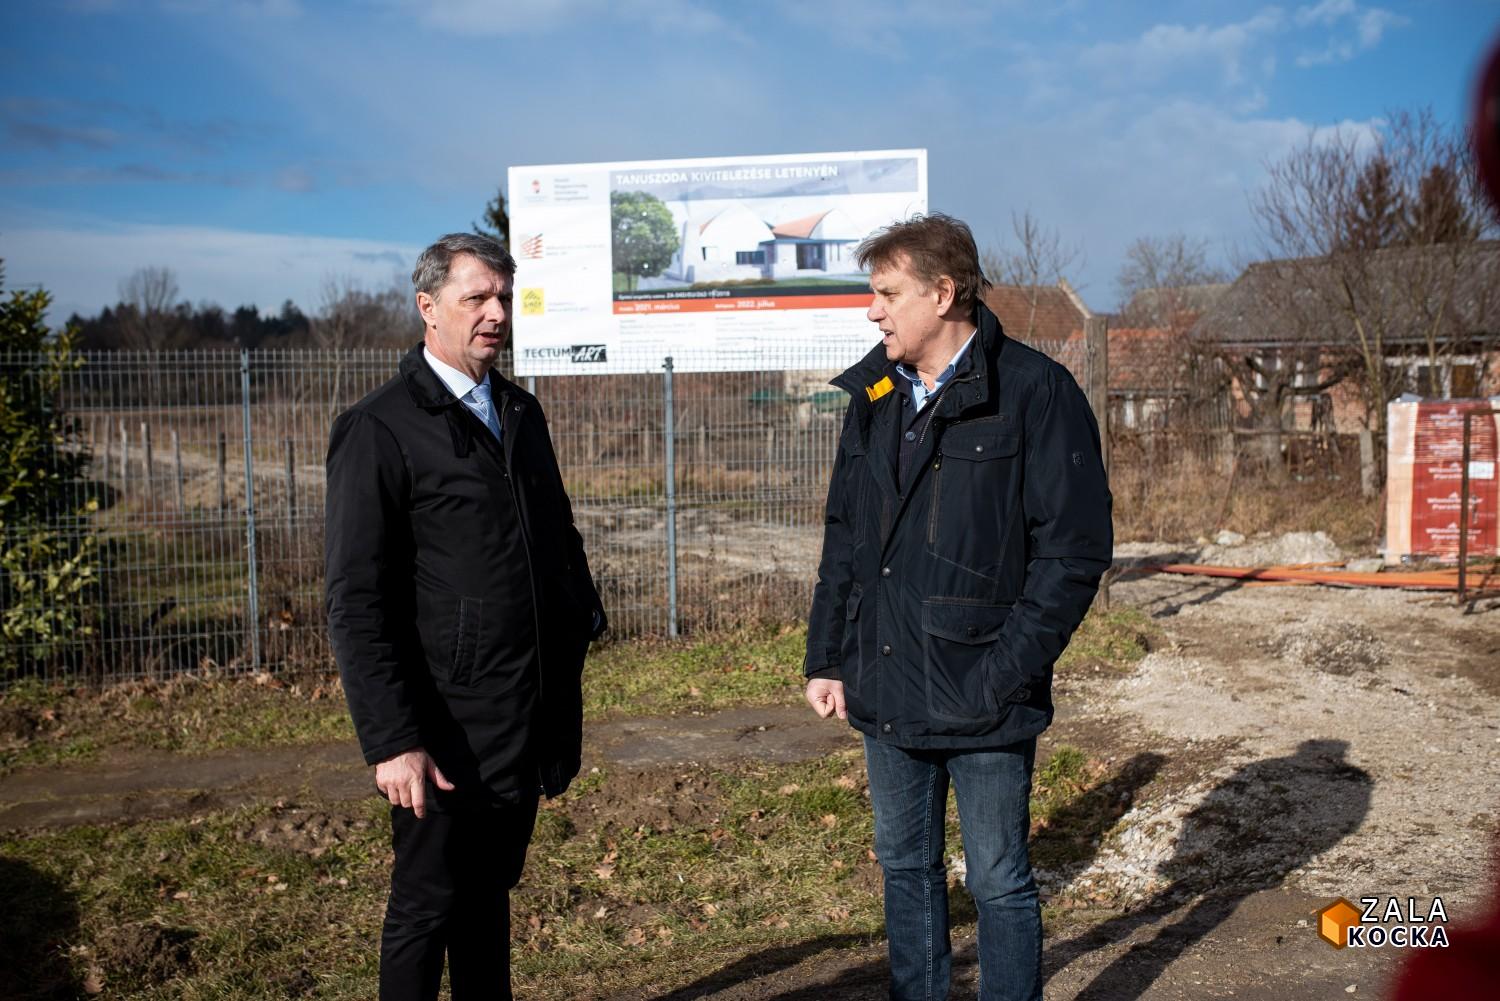 Folytatódhat a letenyei tanuszoda építése, a kormány biztosította a szükséges pluszforrást